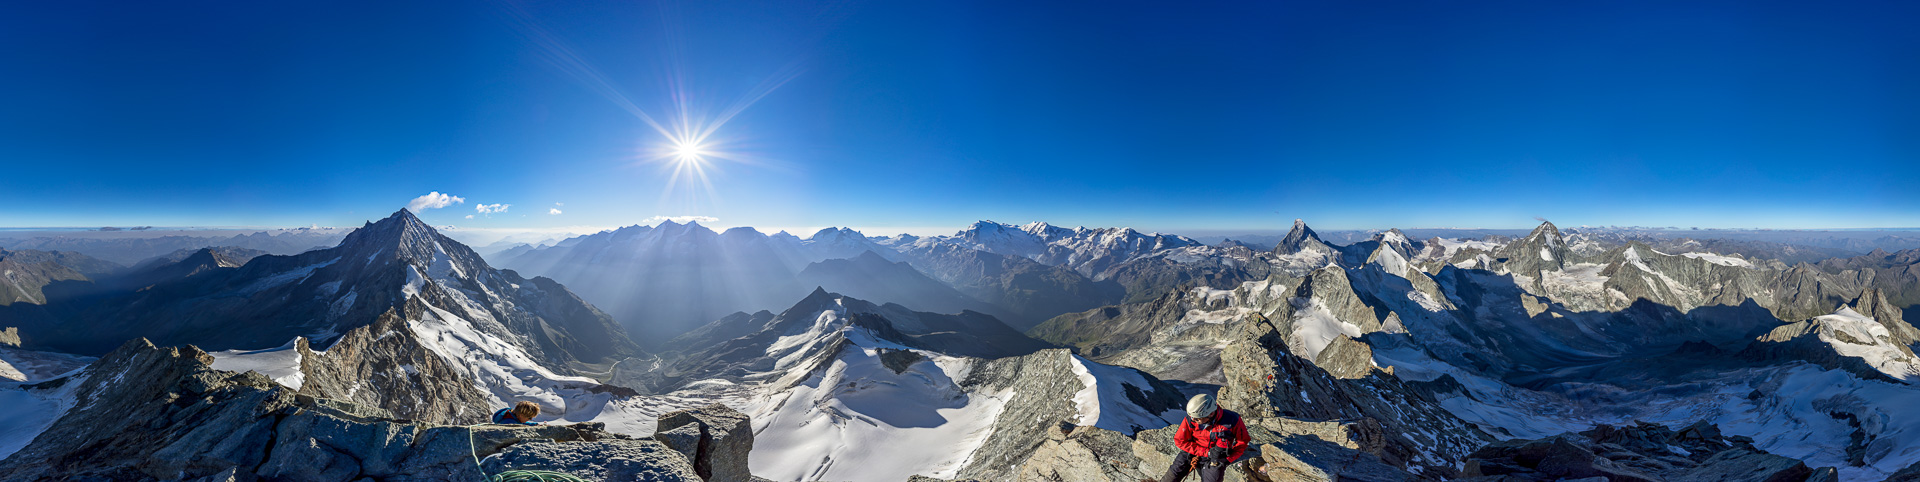 Vielleicht der schönste Panorama-Platz in den ganzen Alpen!?